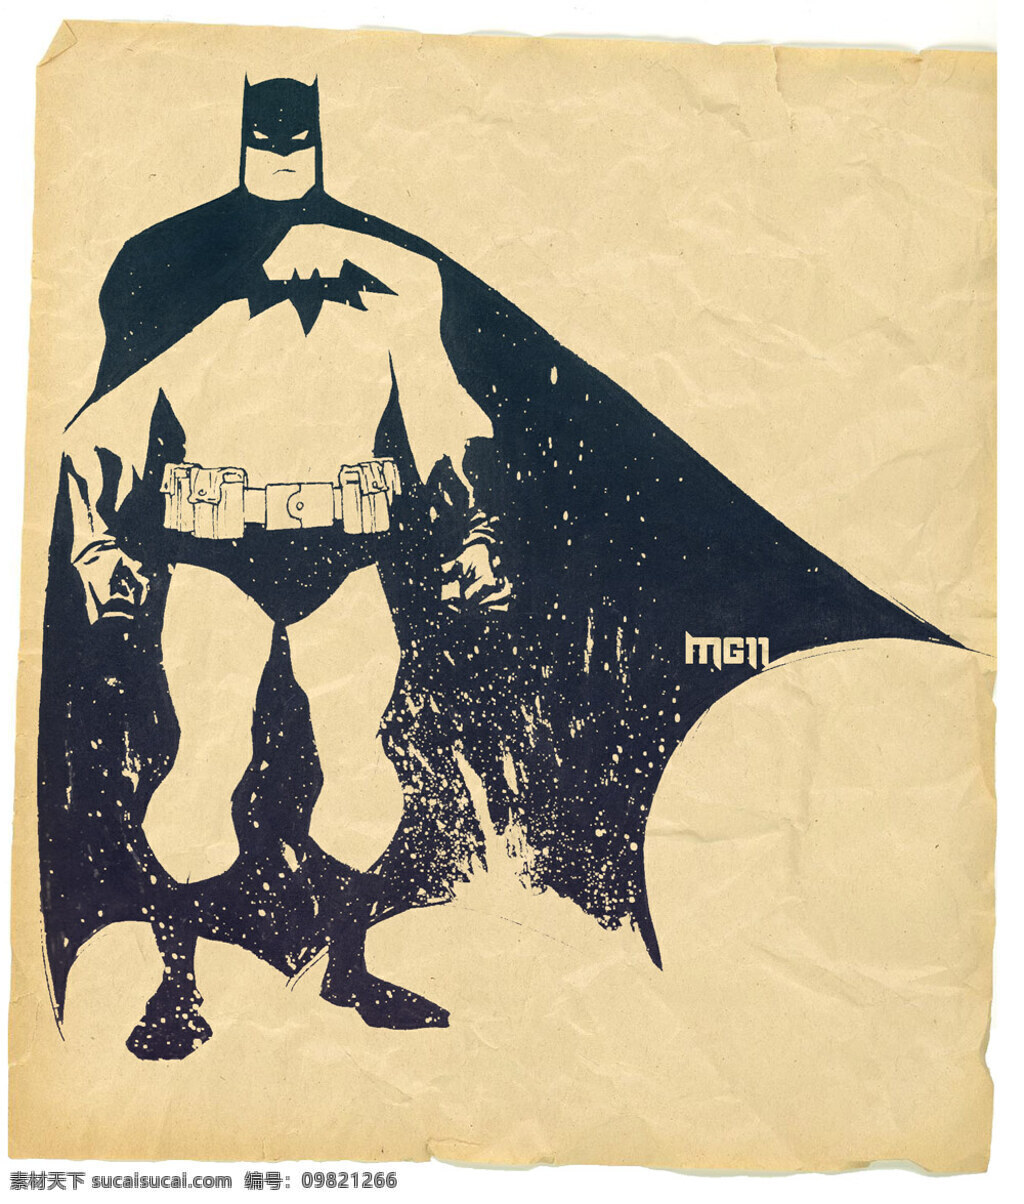 蝙蝠侠 batman 漫画 dc 夜翼 动漫人物 动漫动画